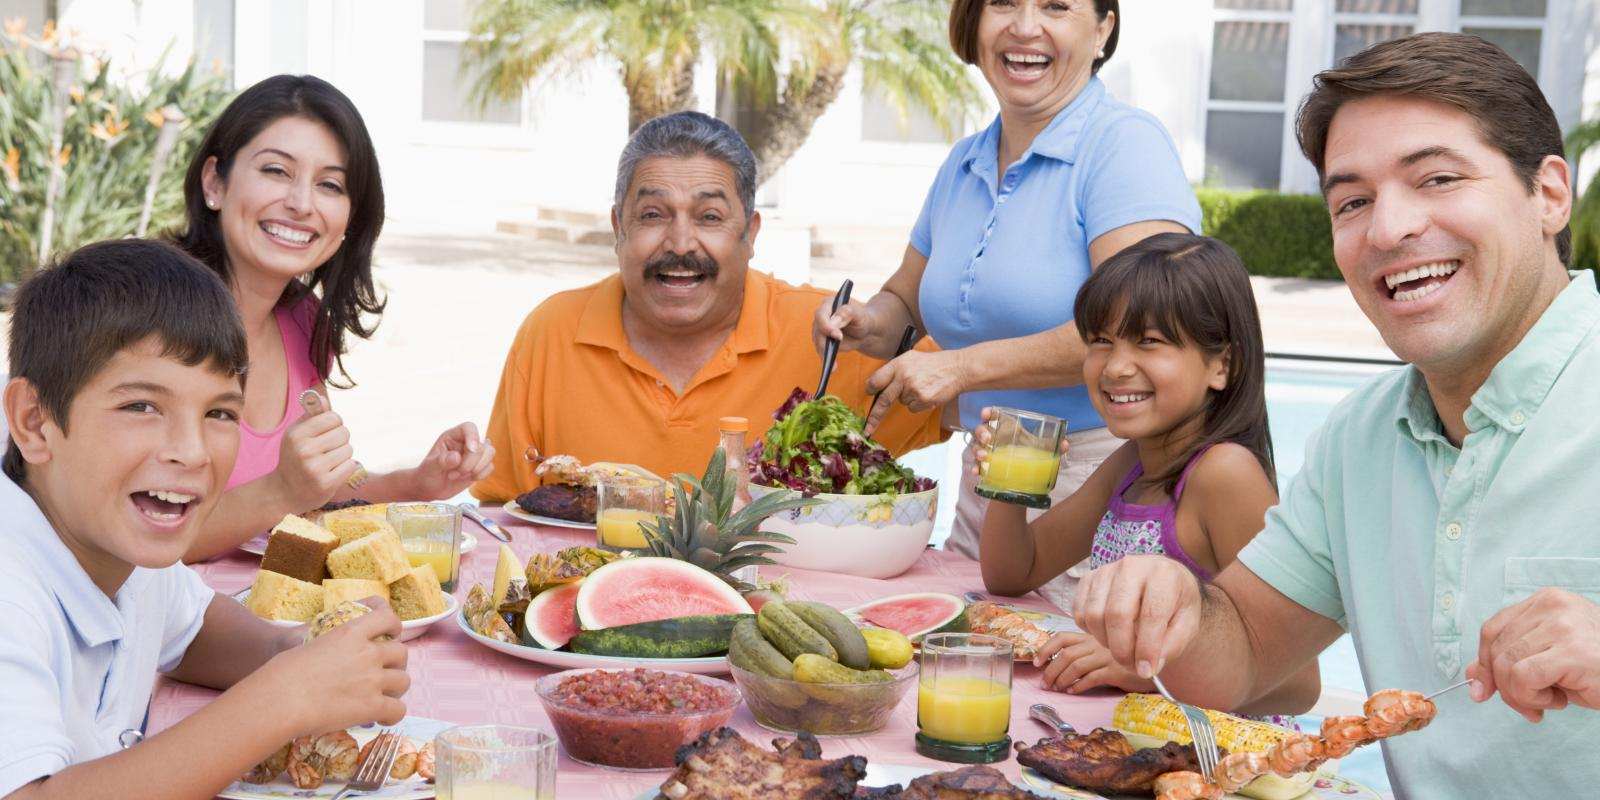 hispanic family dinner